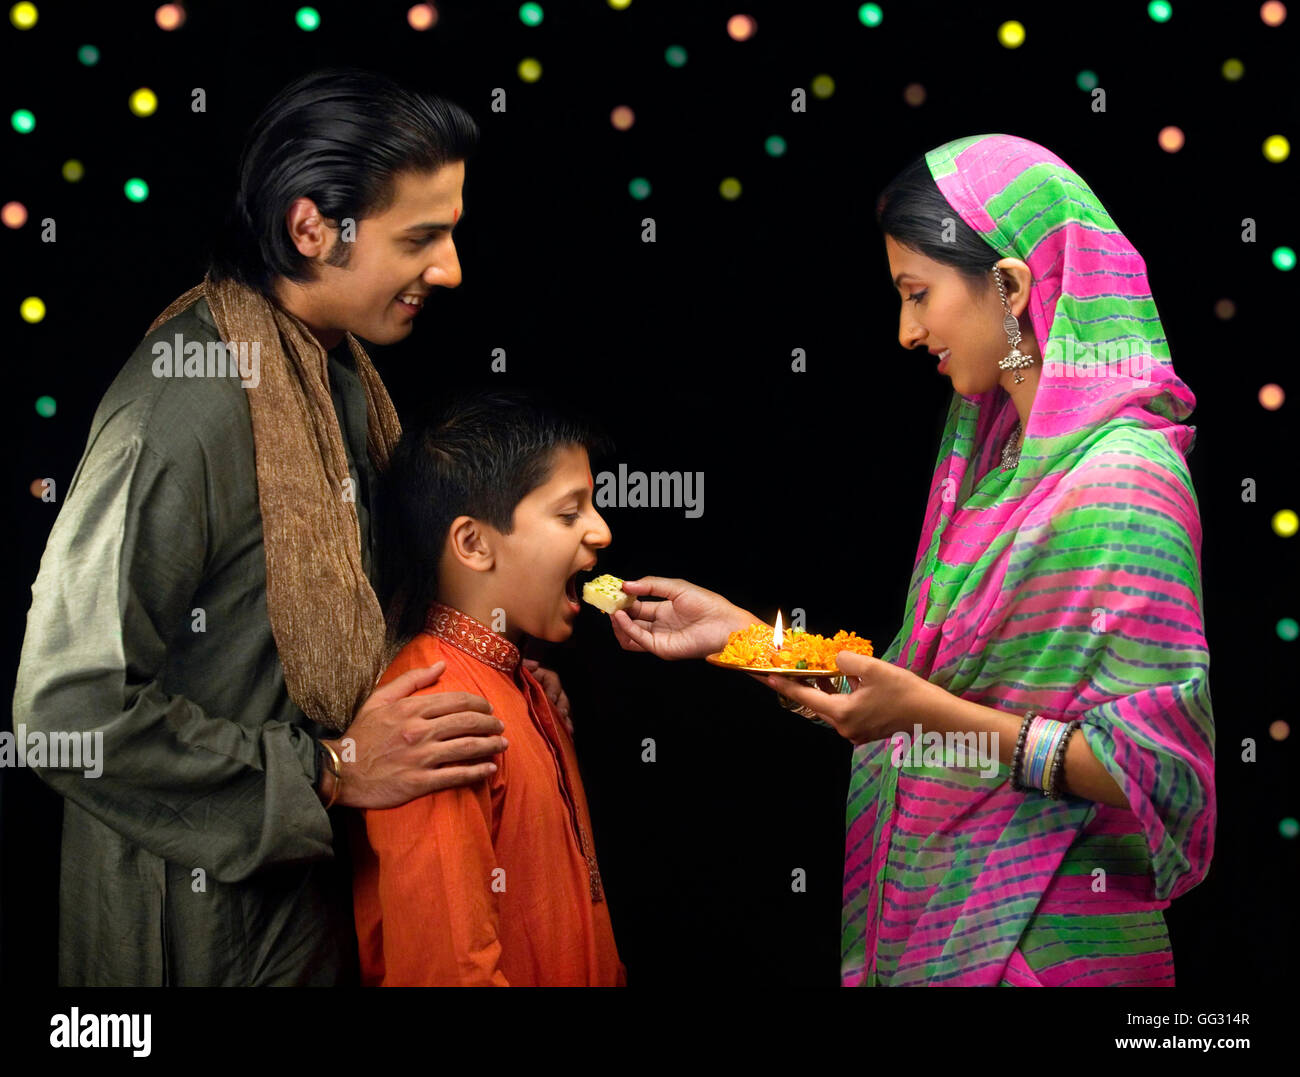 Family celebrating diwali Stock Photo